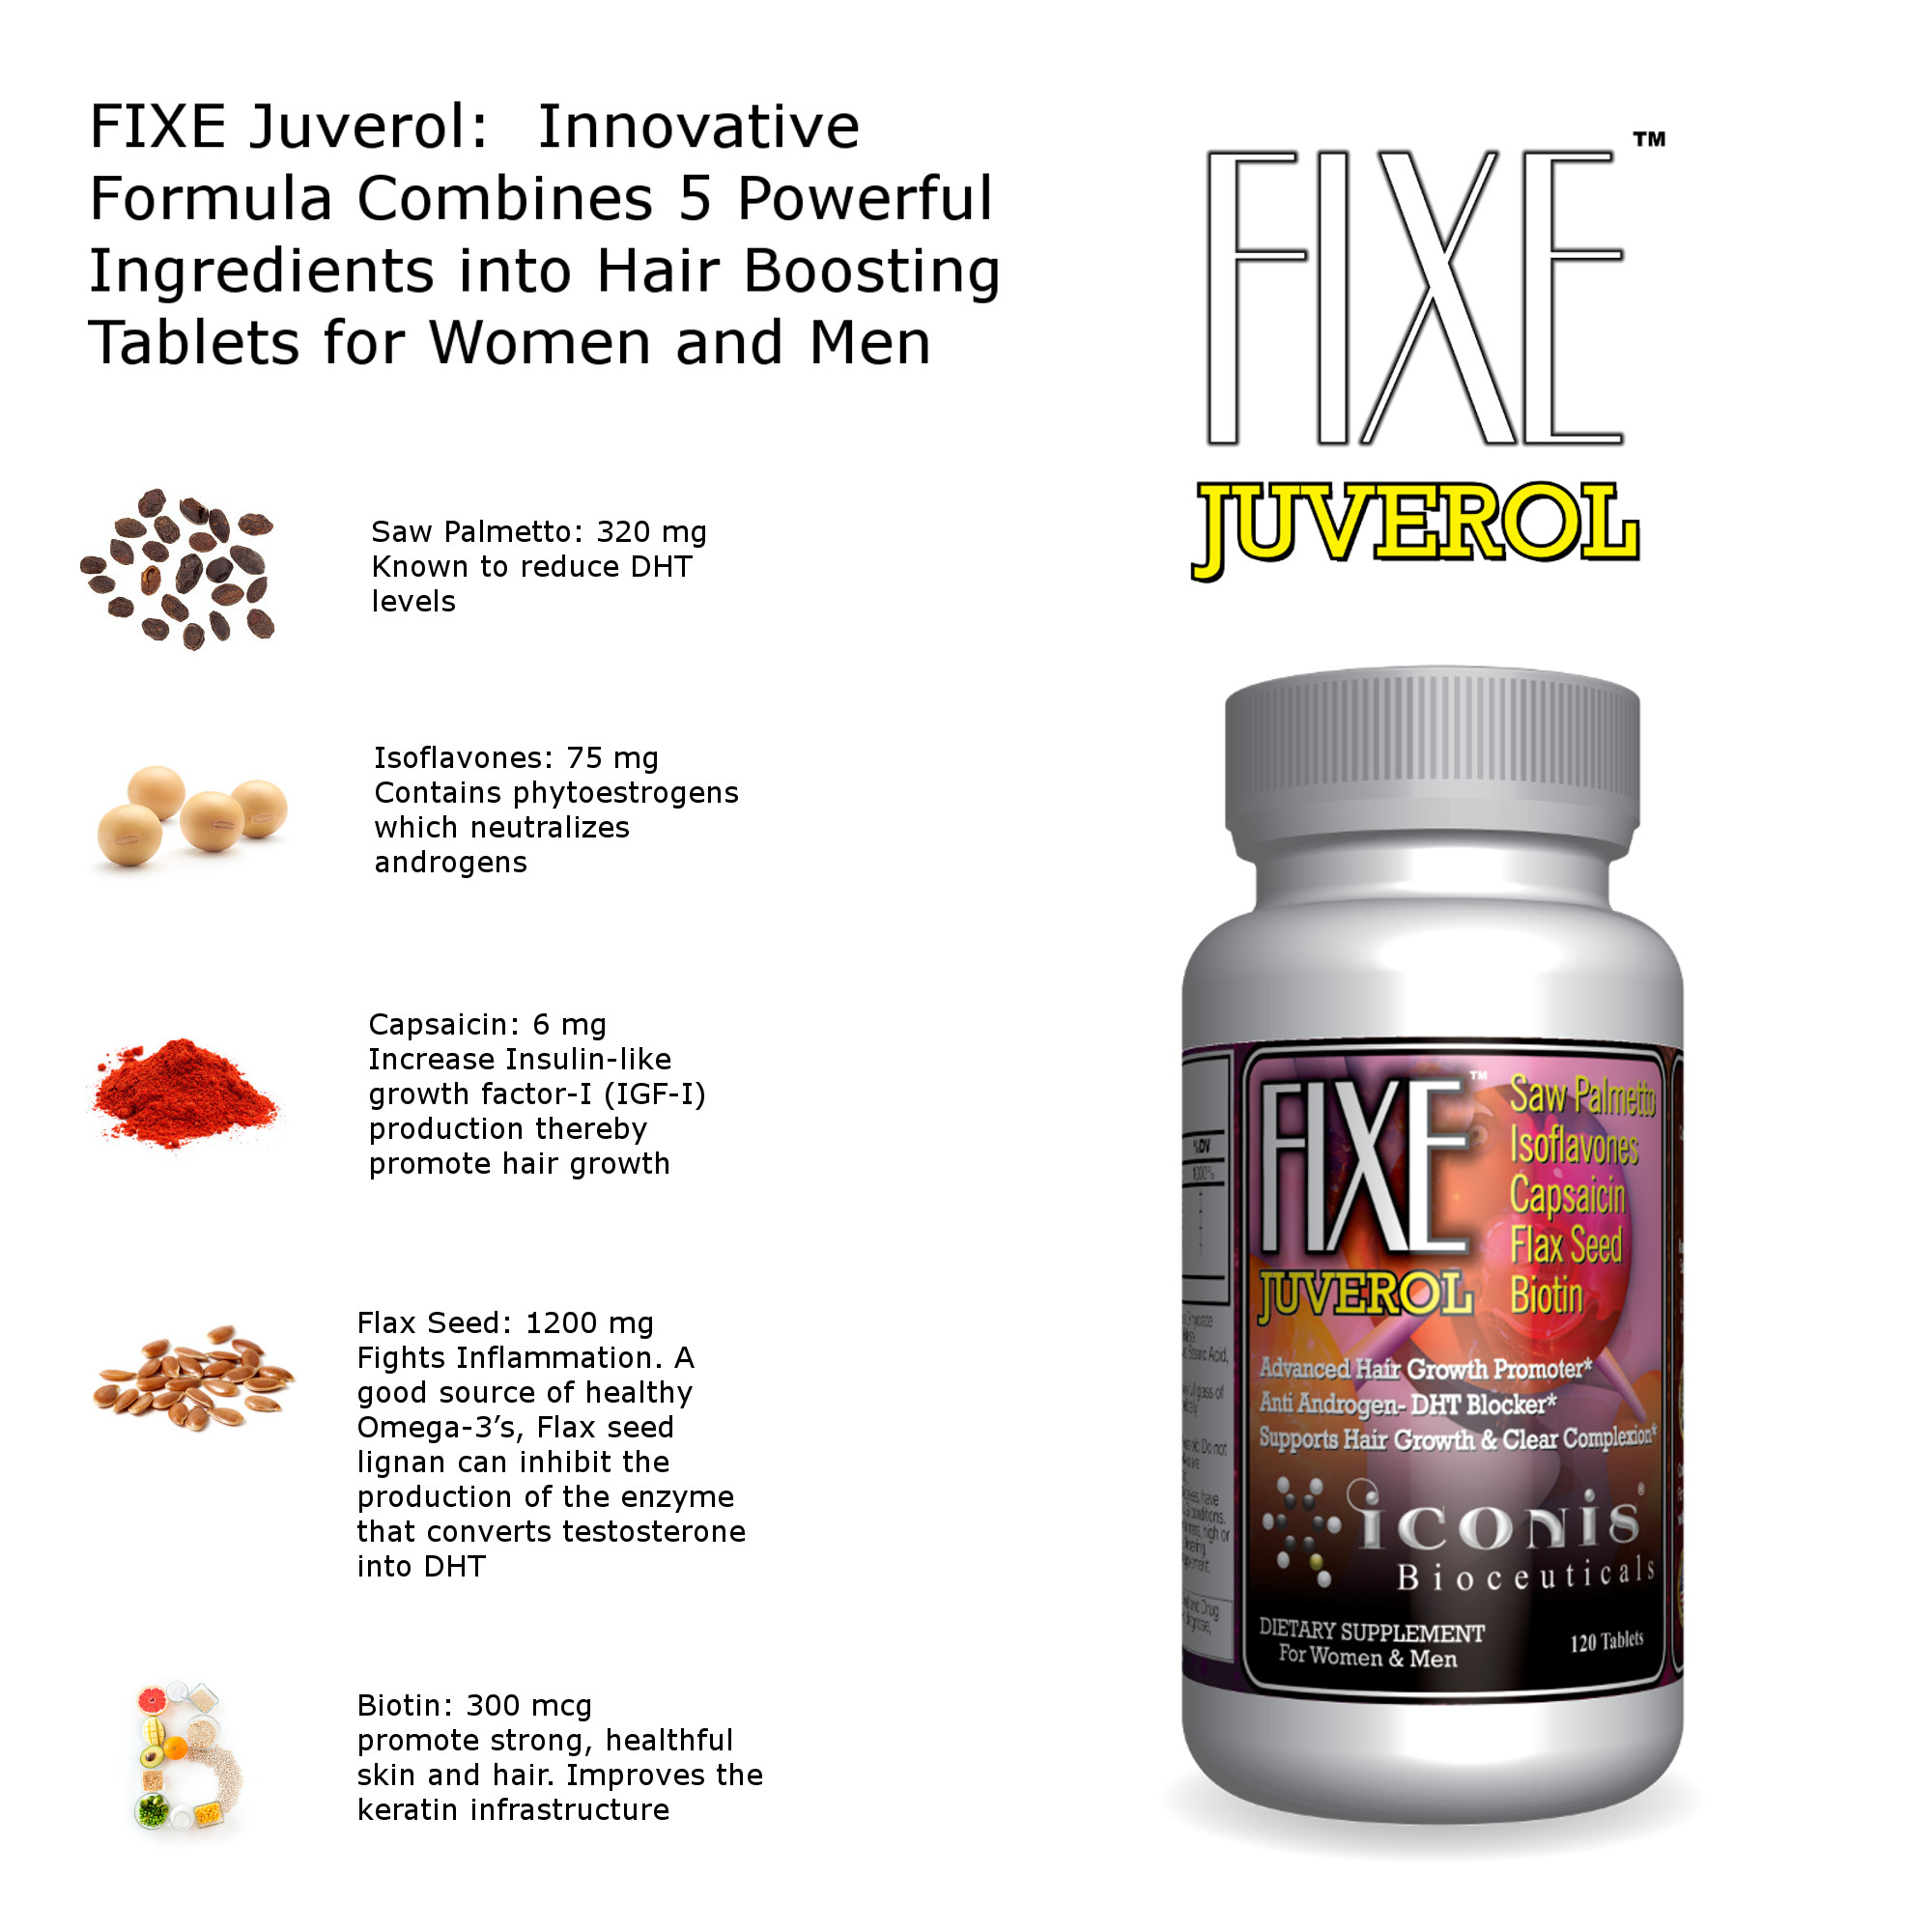 FIXE Juverol – Iconis Bioceuticals